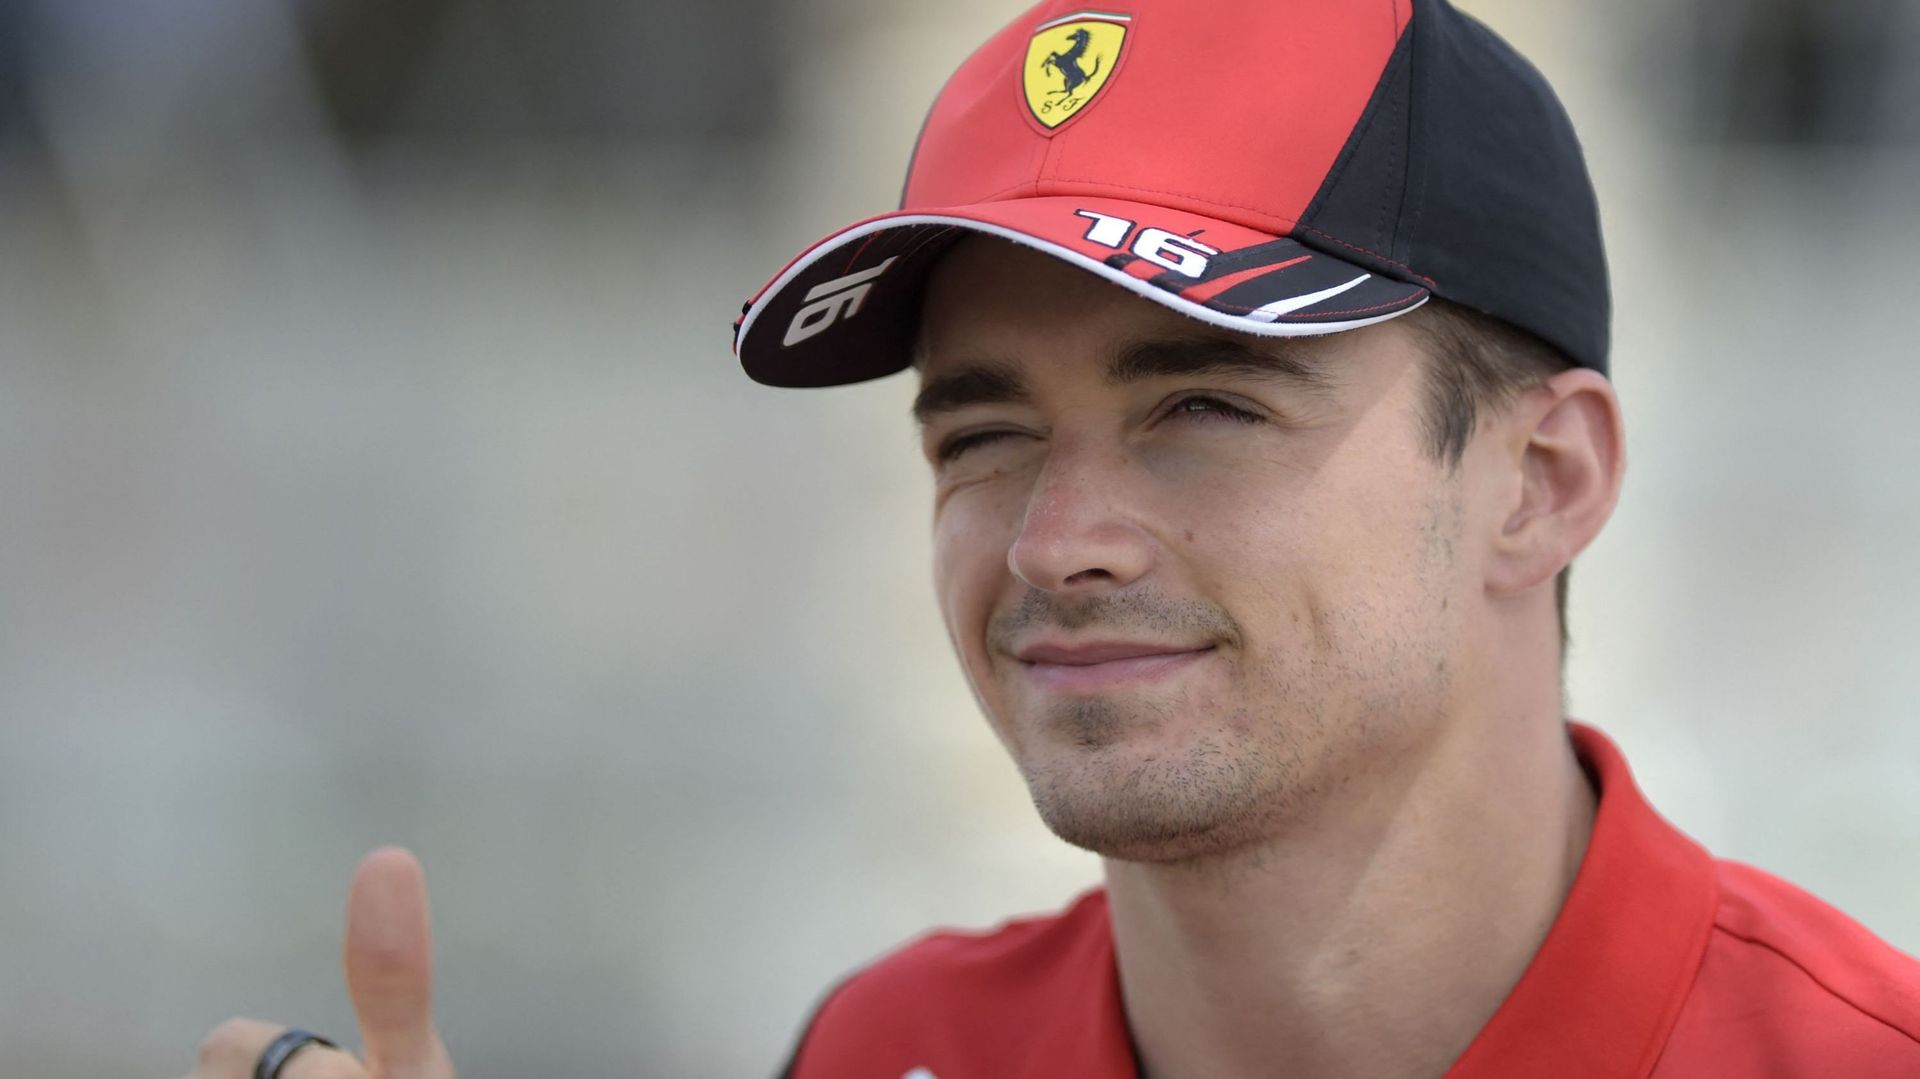 J'ai un problème avec la voiture... non je rigole" : la blague d'un Charles Leclerc taquin lors du dernier tour à Bahrein